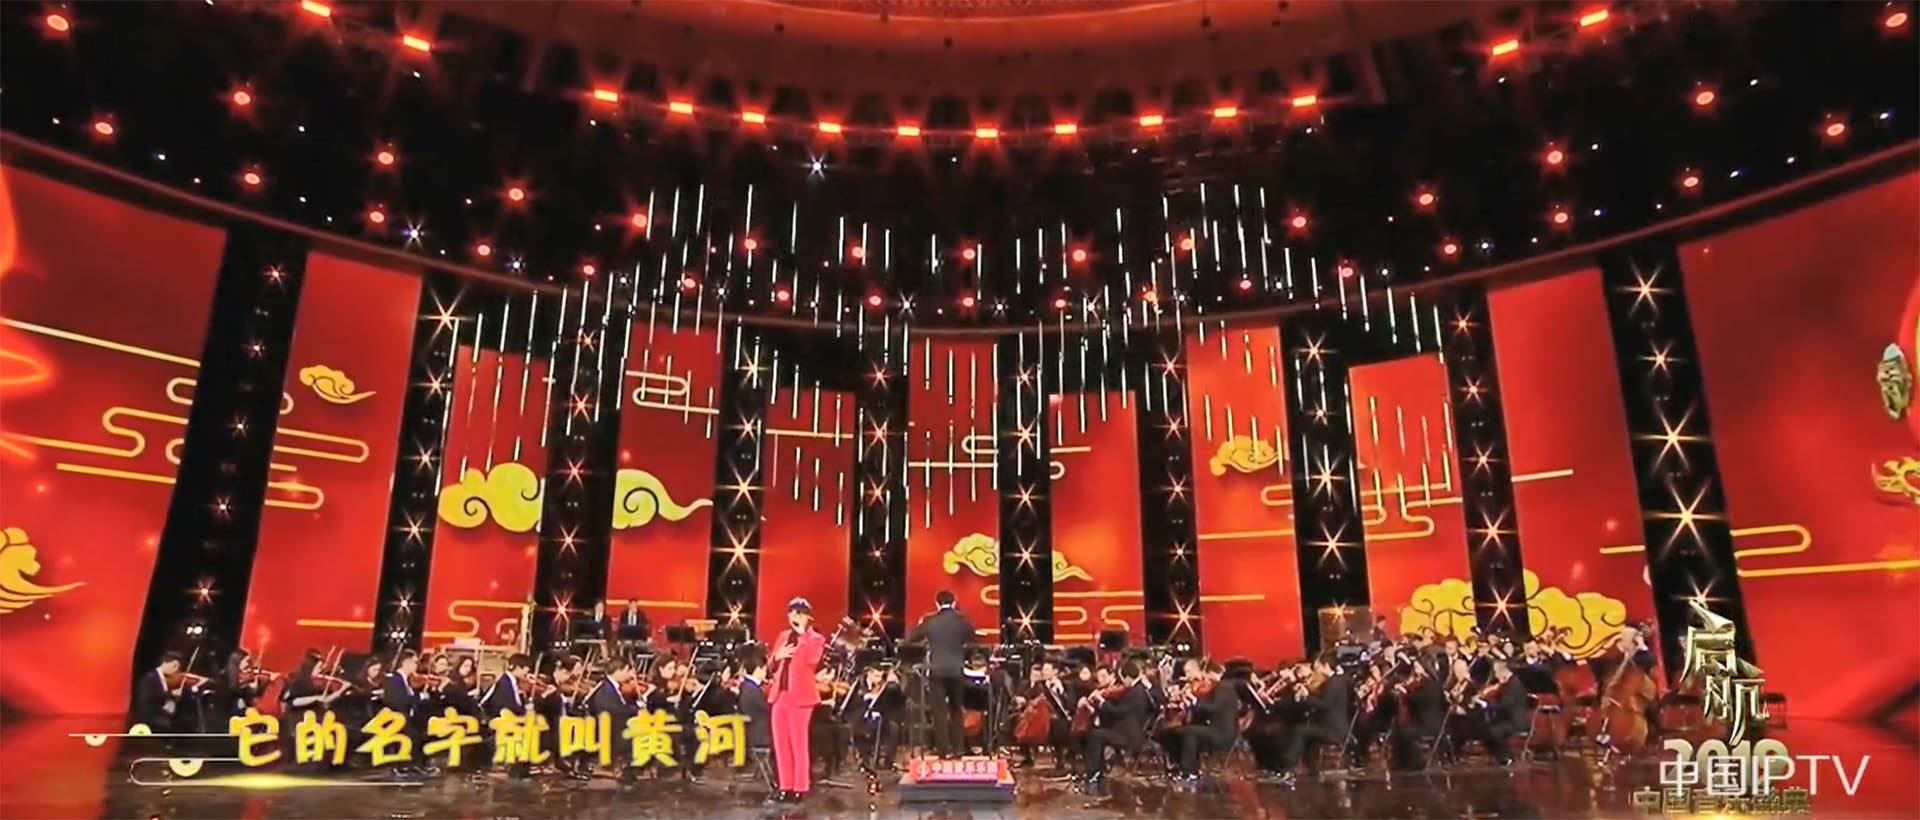 CCTV 1 Program ng 2019 Music Festival (2)